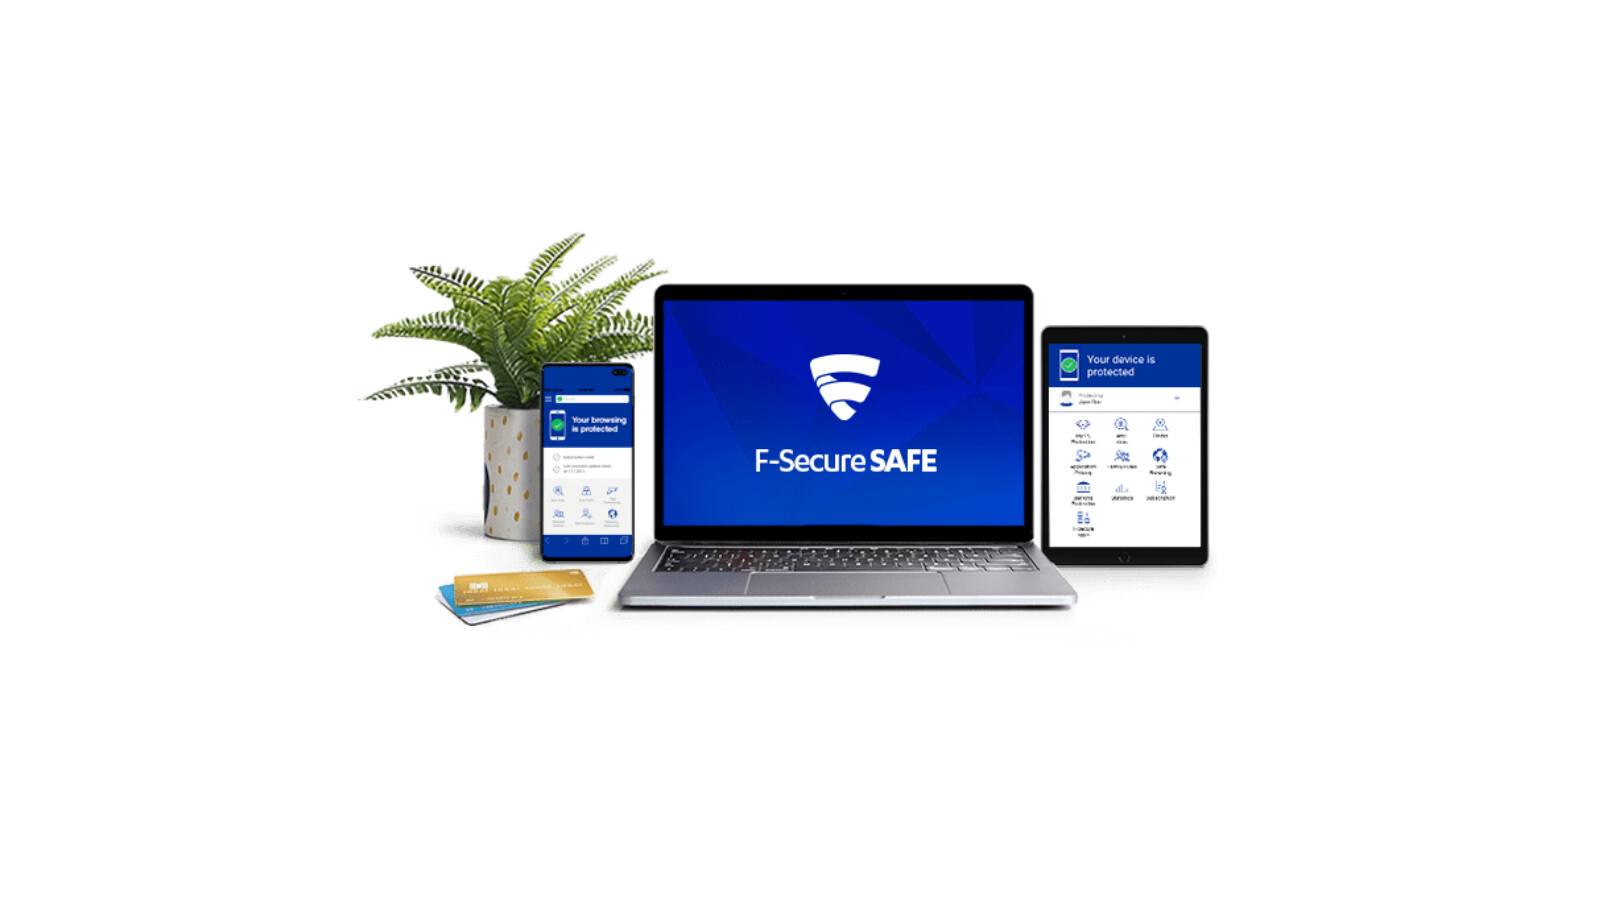 F-Secure F-Secure SAFE|1-5 Geräte|immer aktuell für 1 oder 2 Jahre|Download|ESD 